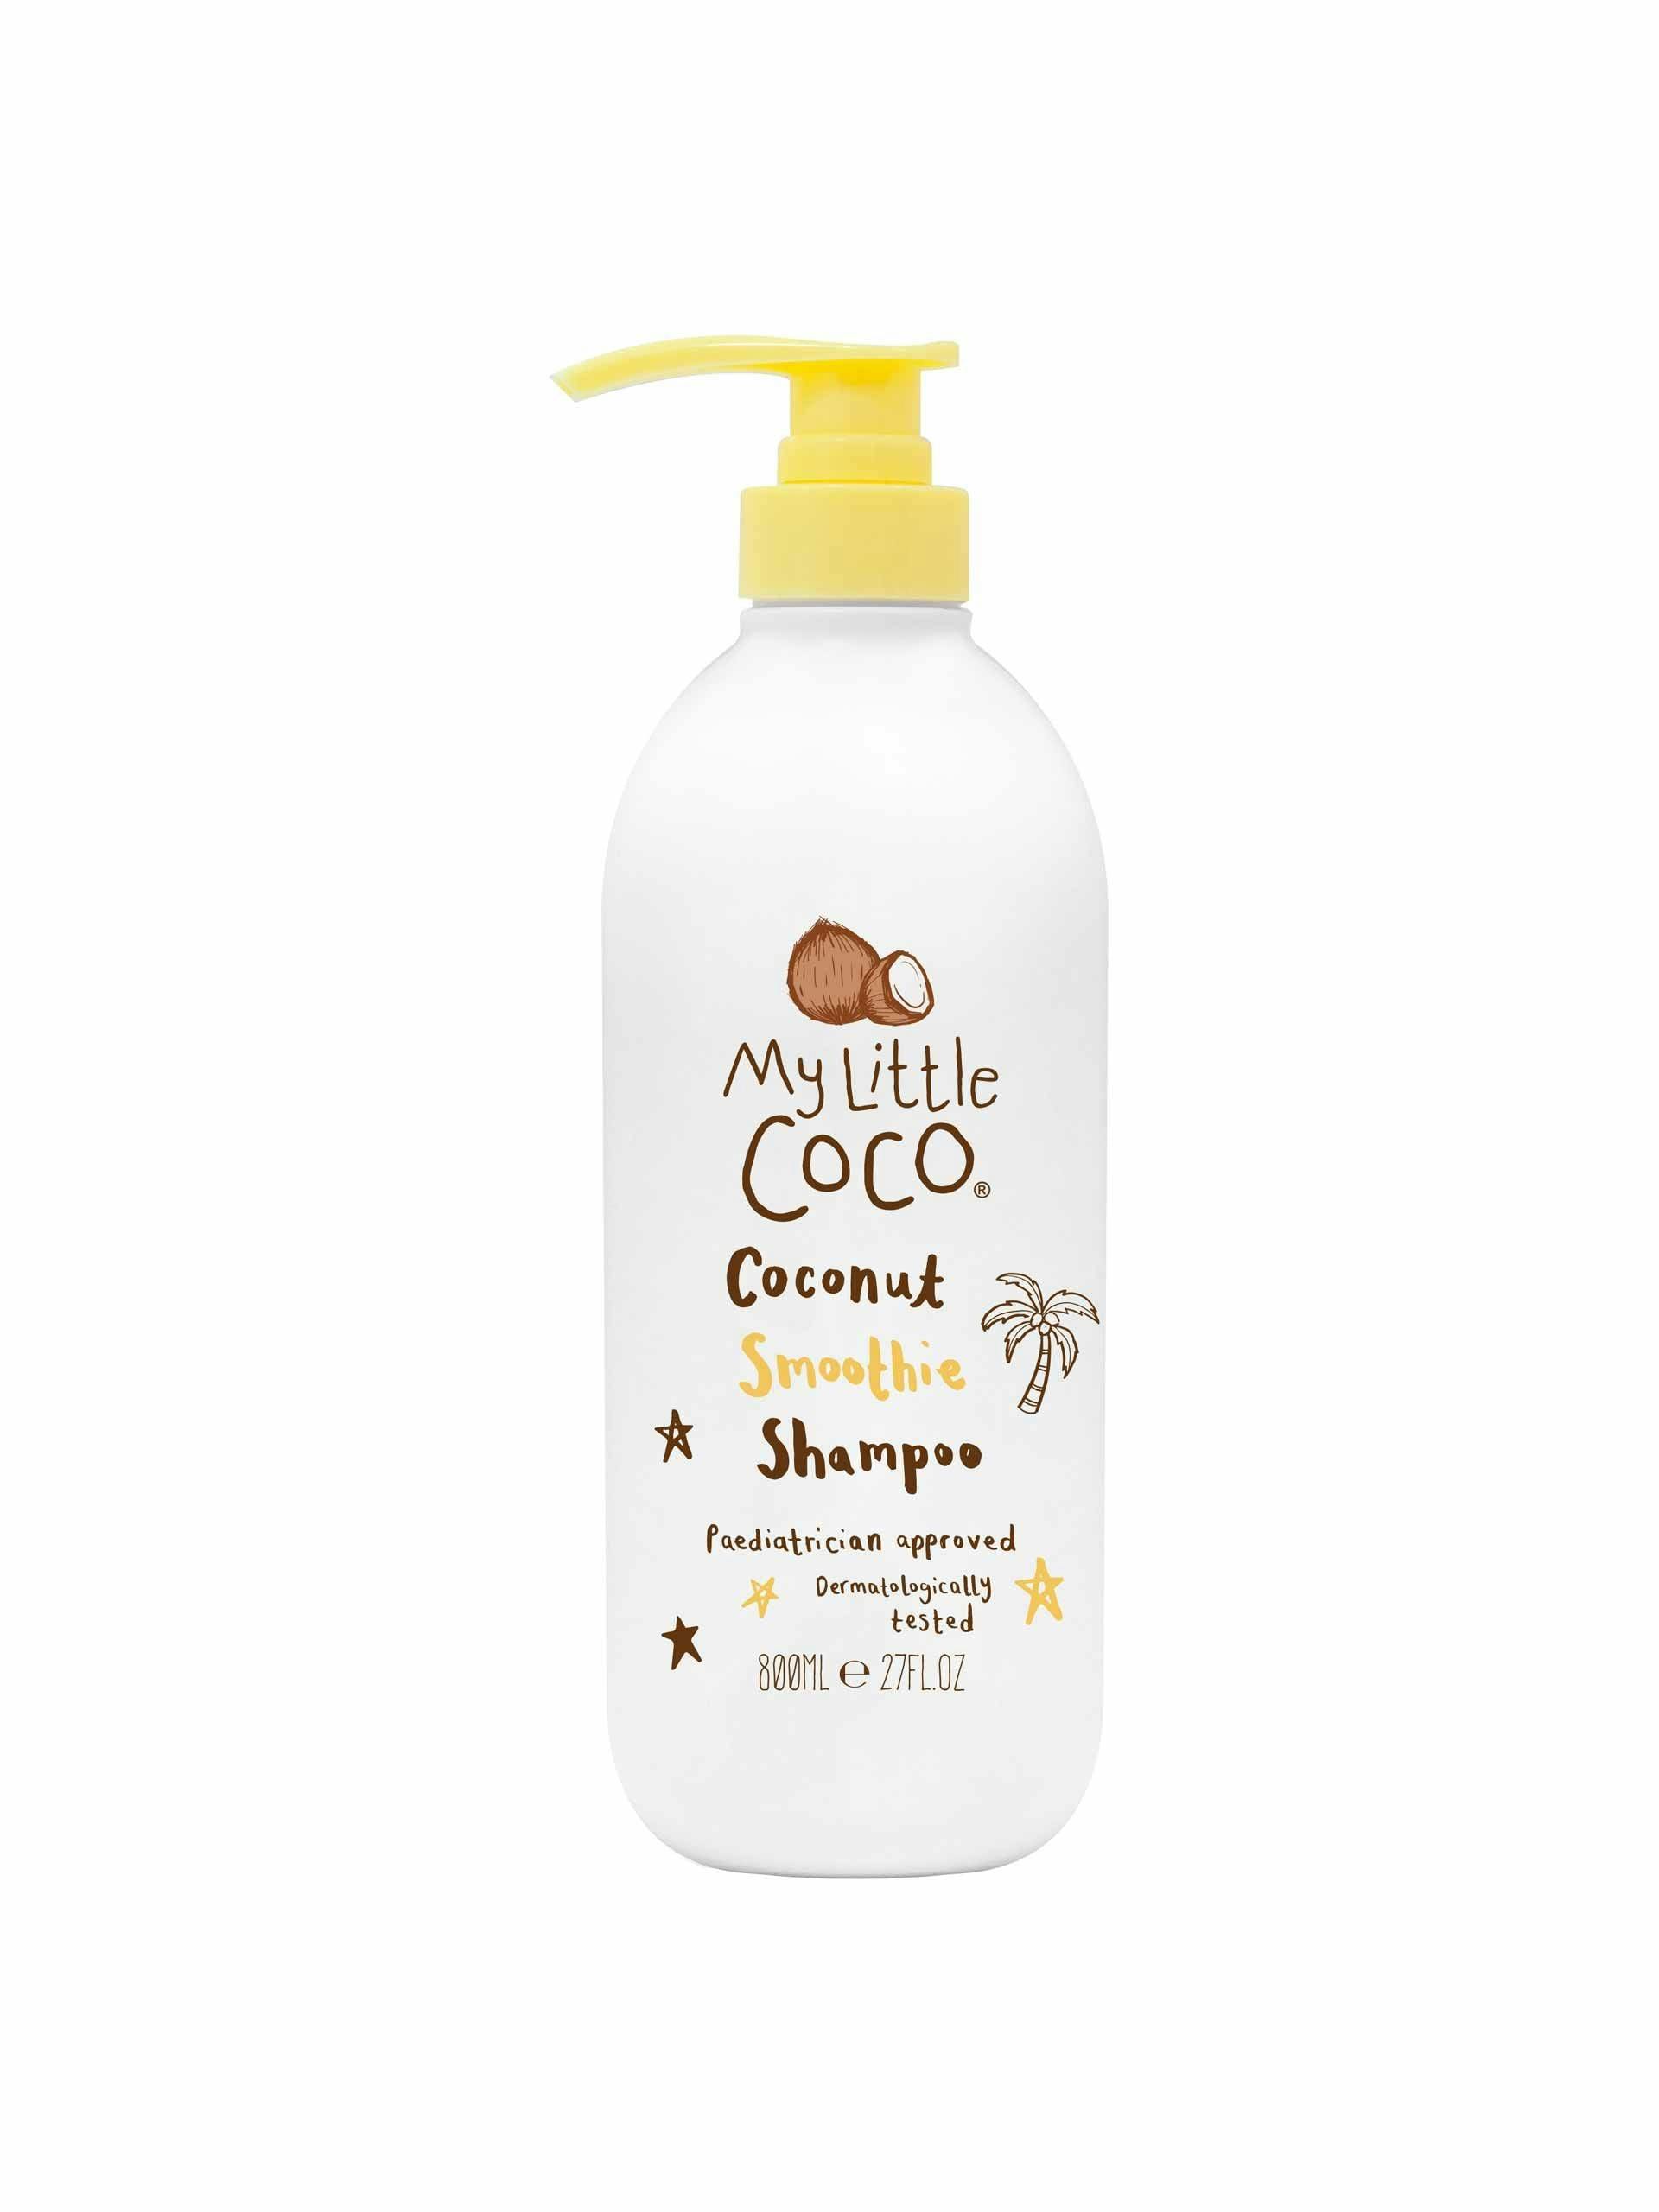 Coconut Smoothie shampoo